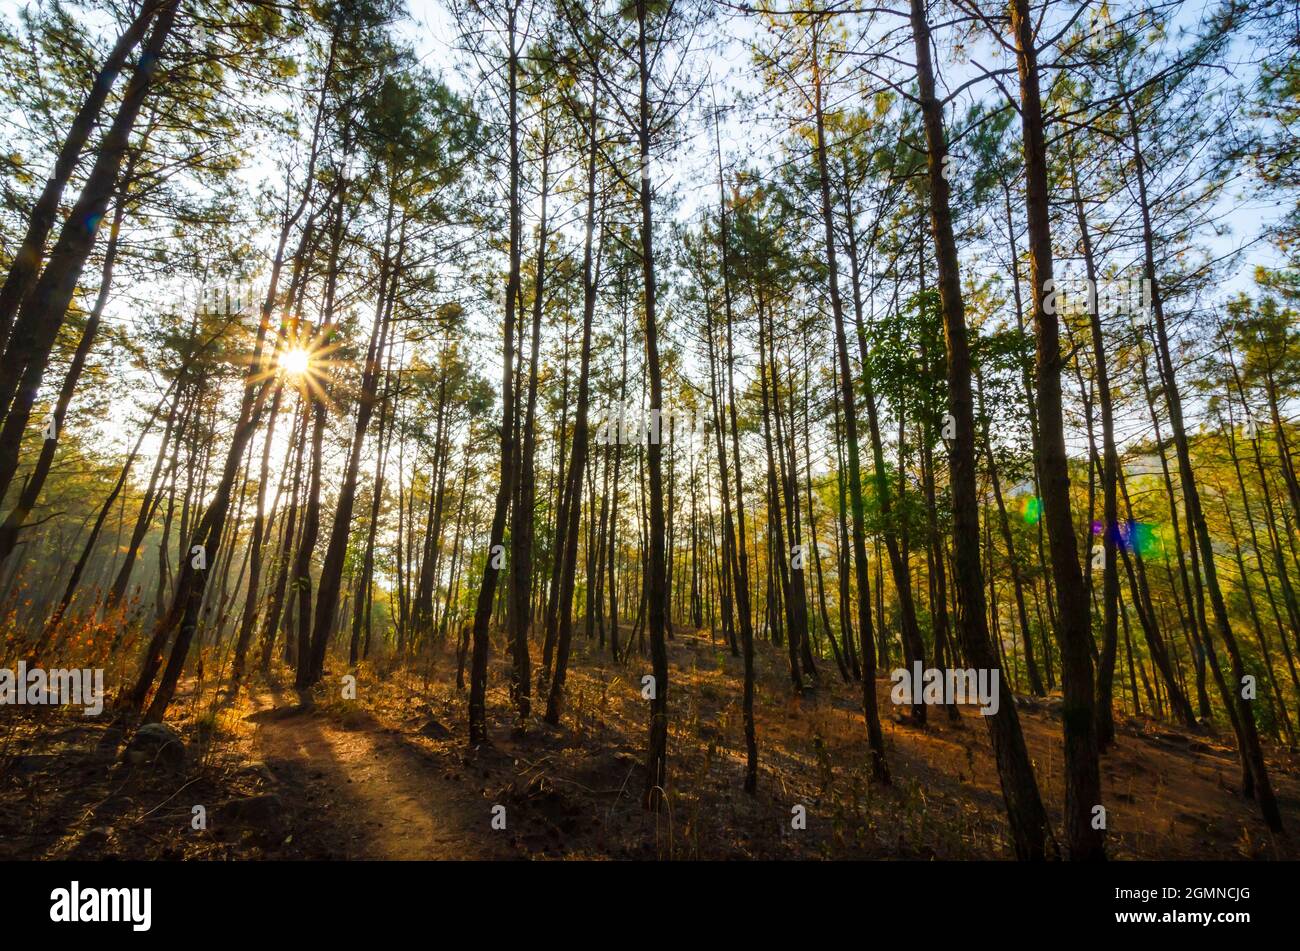 L'objectif se diffuse du soleil. La lumière du soleil se filtrant à travers les pins denses de la forêt réservée d'Itshyrwat à Shillong, Meghalaya, Inde. Banque D'Images